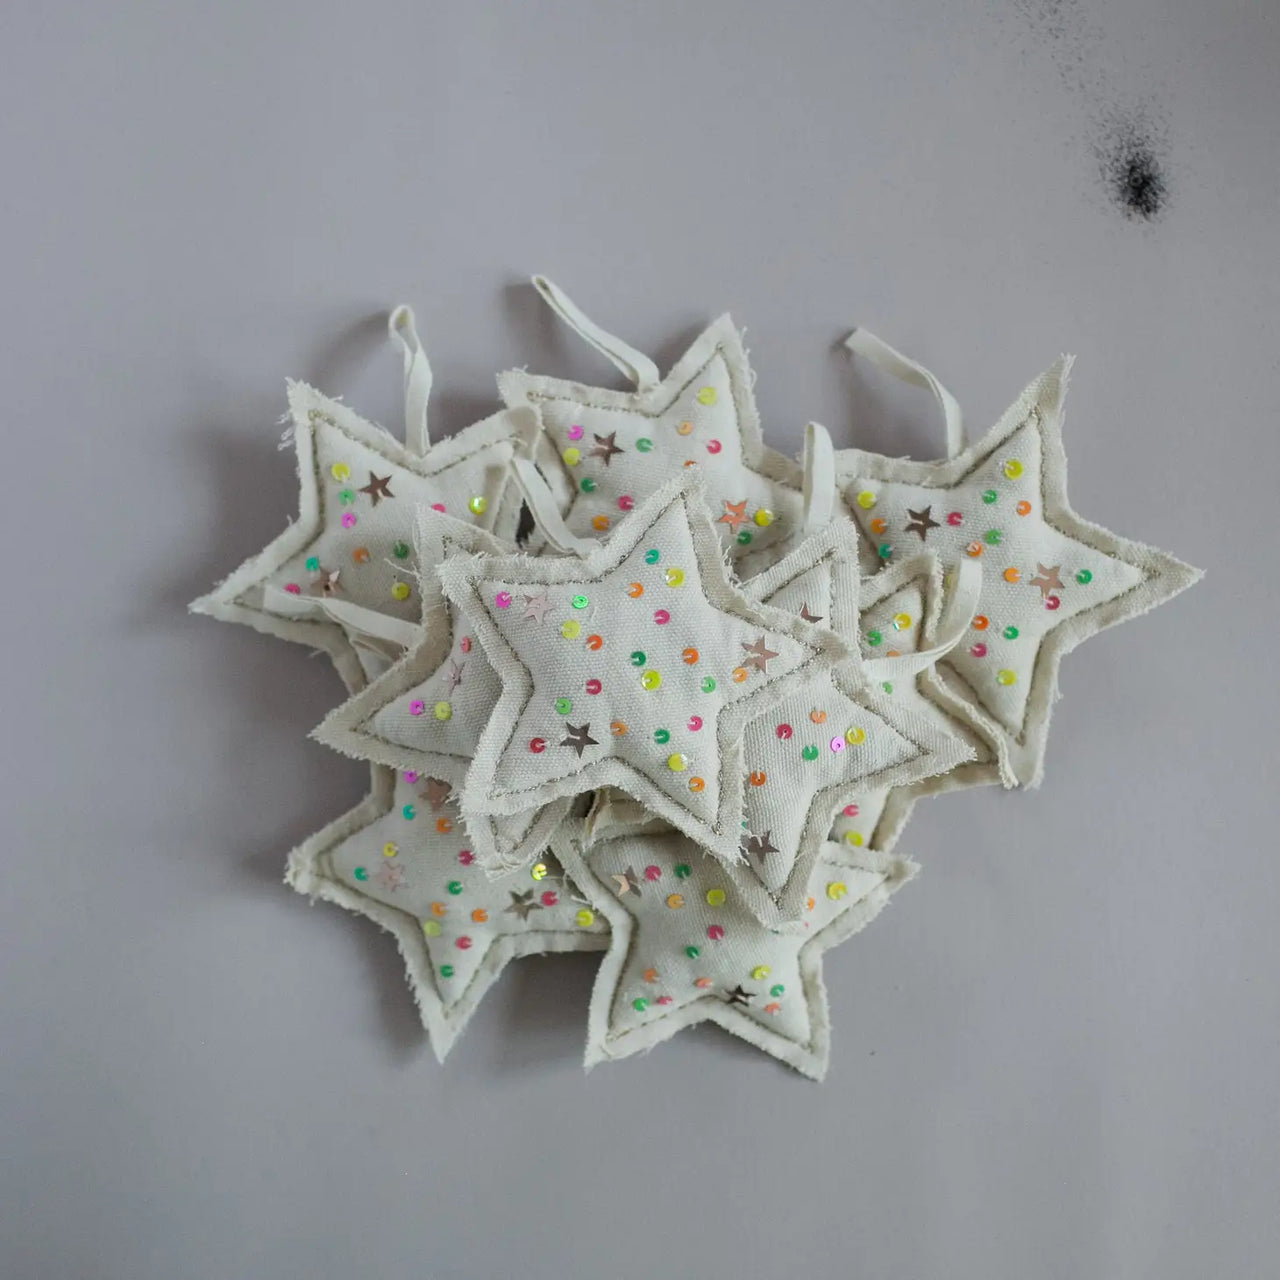 Neon Confetti Star, Cotton-filled Ornament